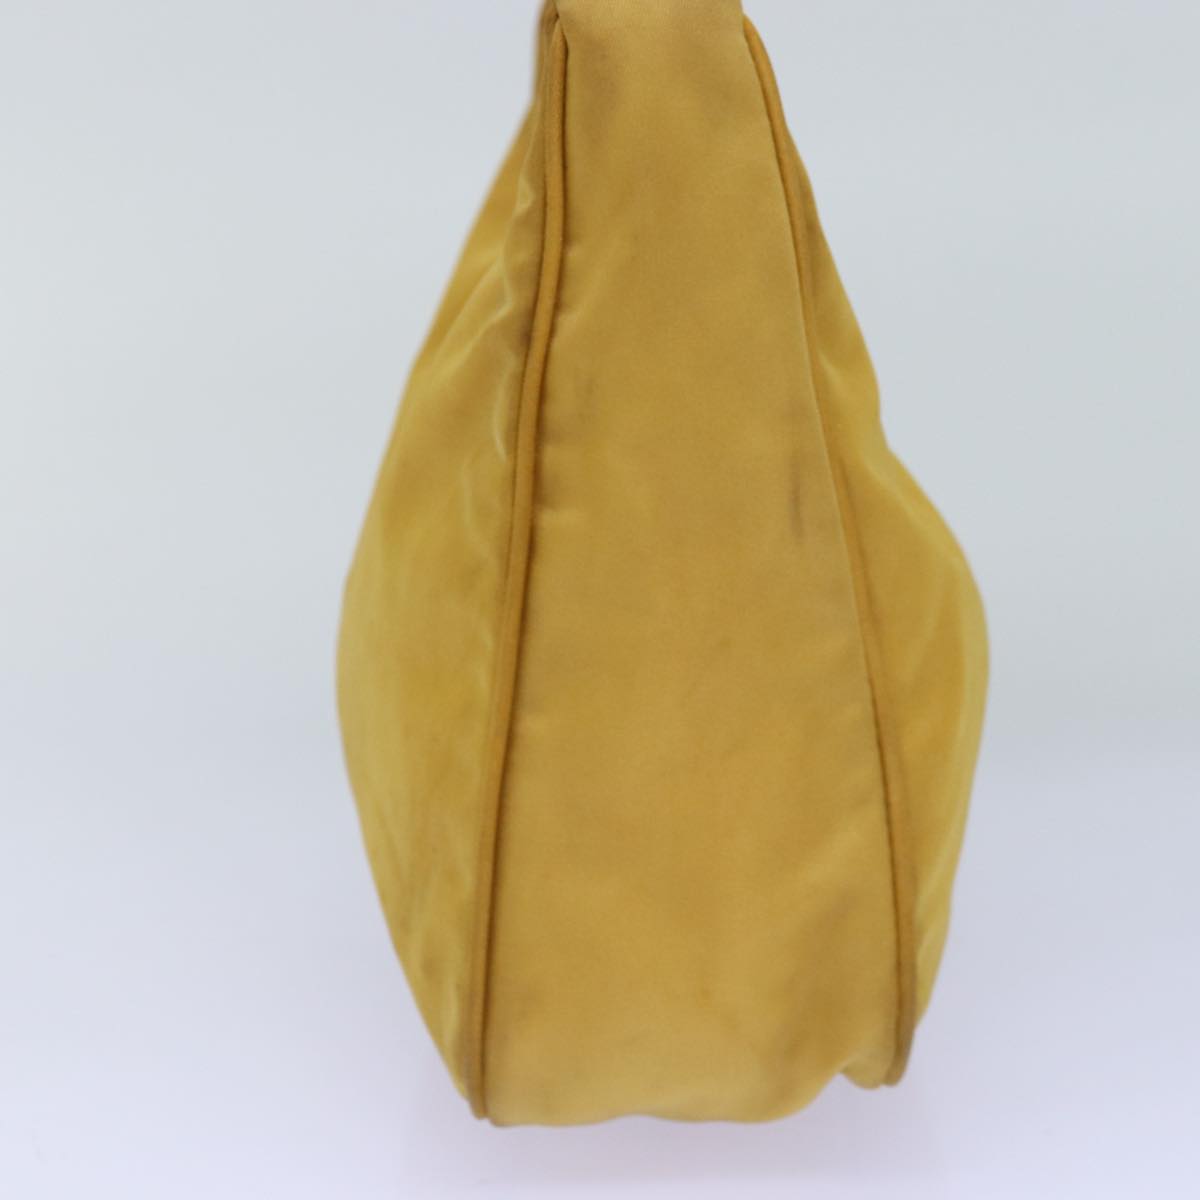 PRADA Hand Bag Nylon Yellow Auth 75633